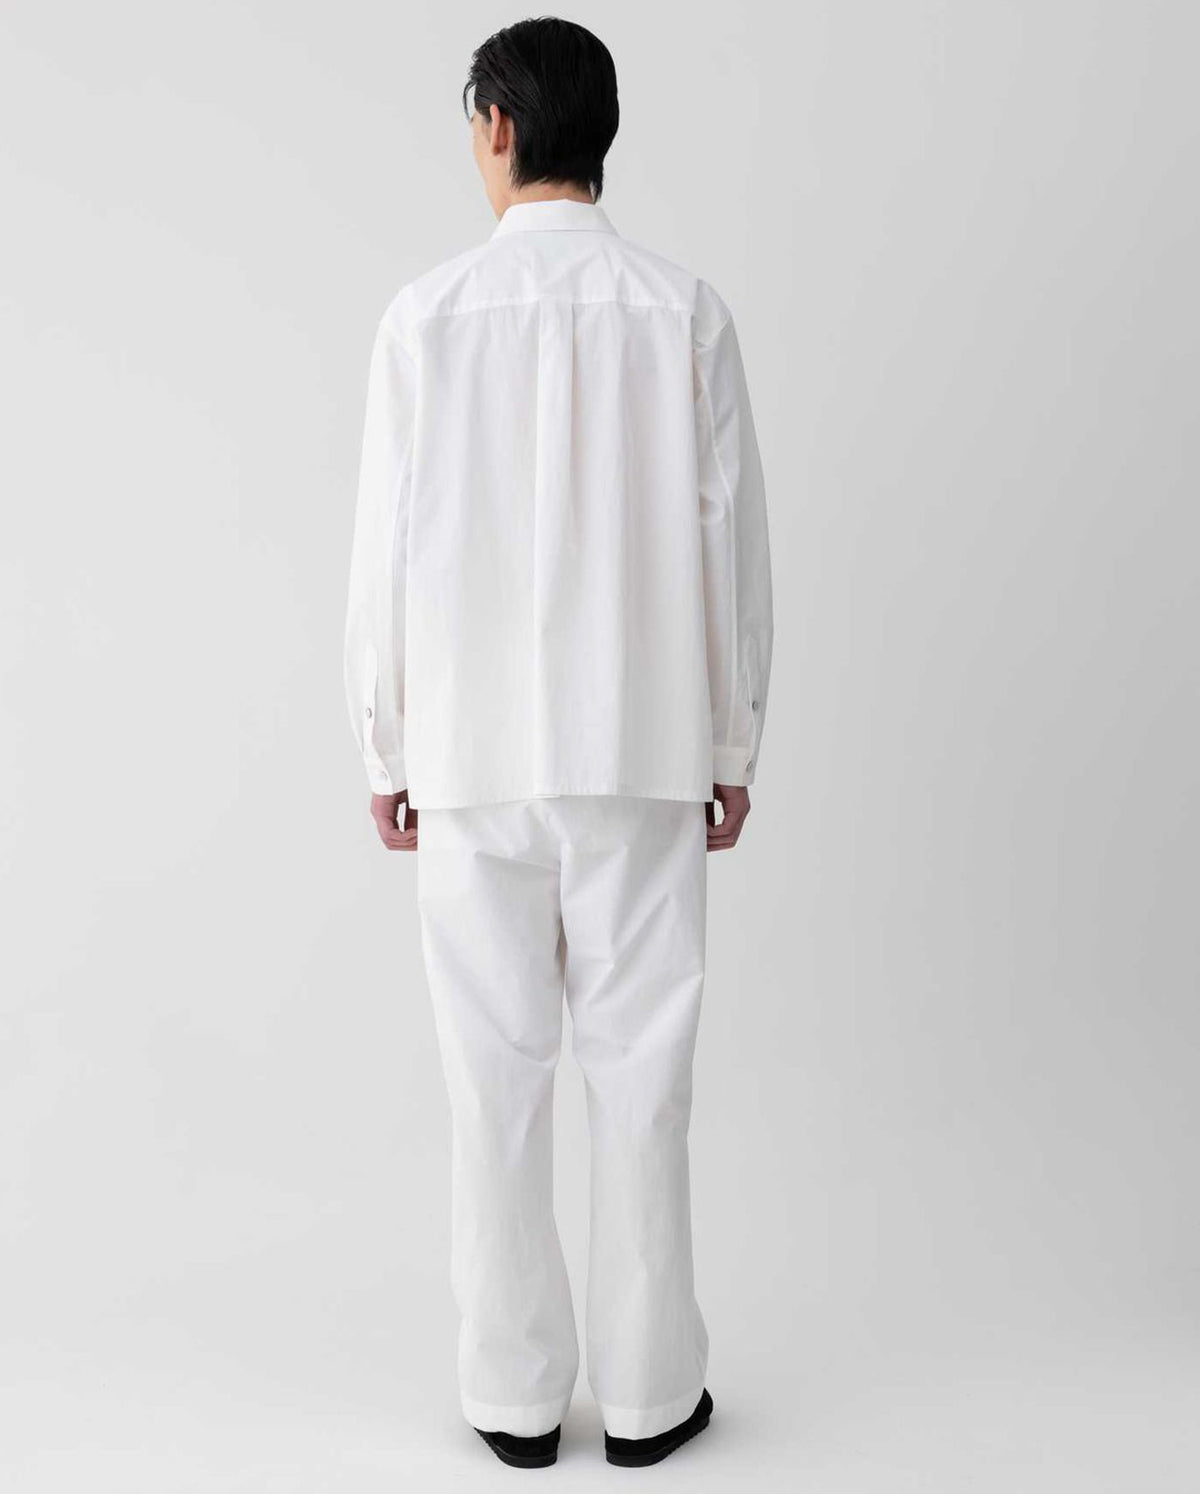 Round Line Layered Shirts - White